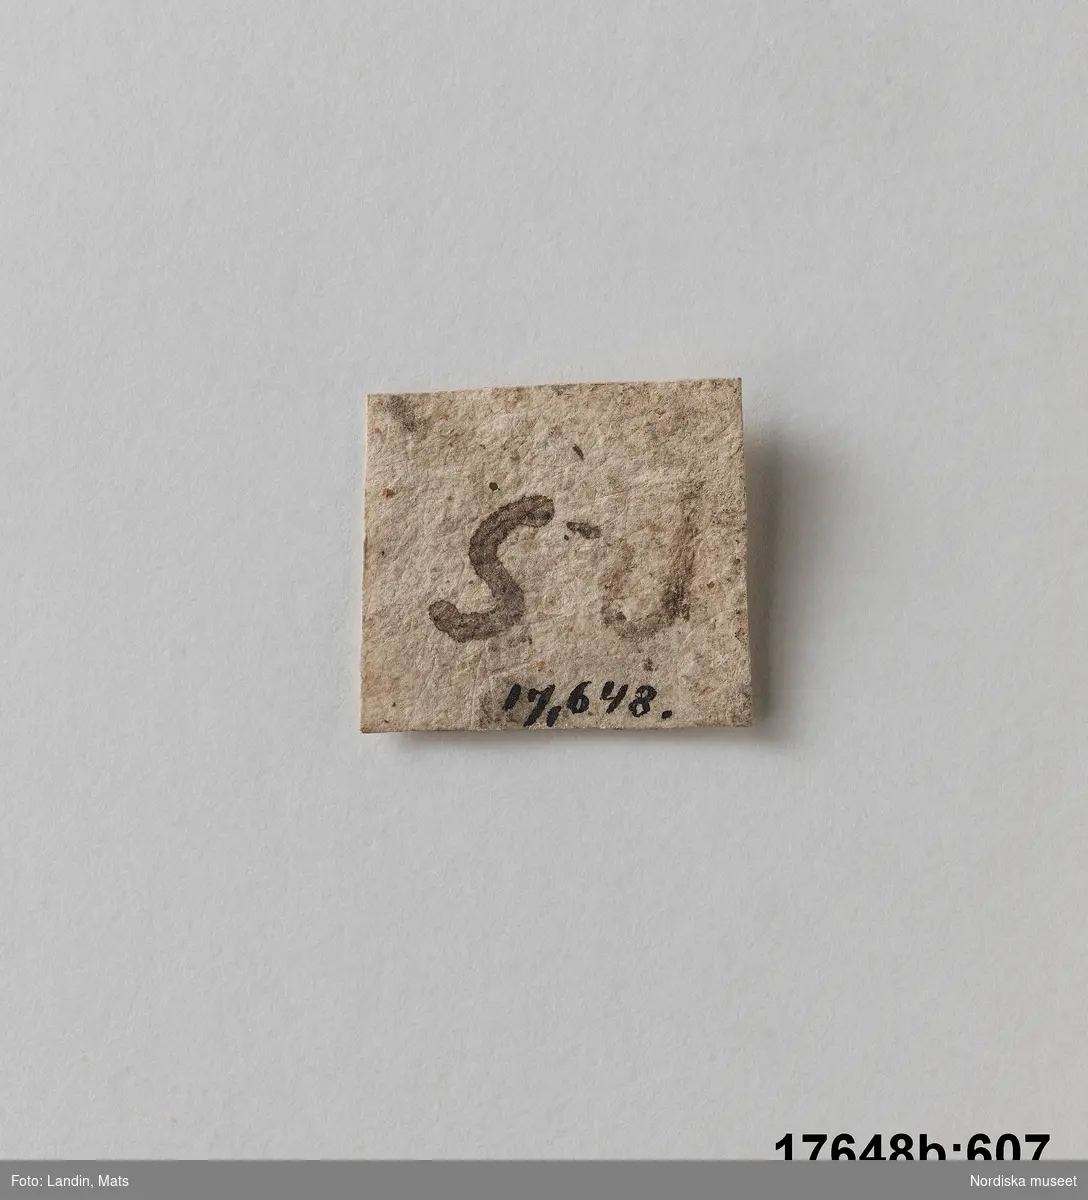 Pappersetikett (som ursprungligen har suttit på stenen). Fyrkantig med text på ena sidan "R S".